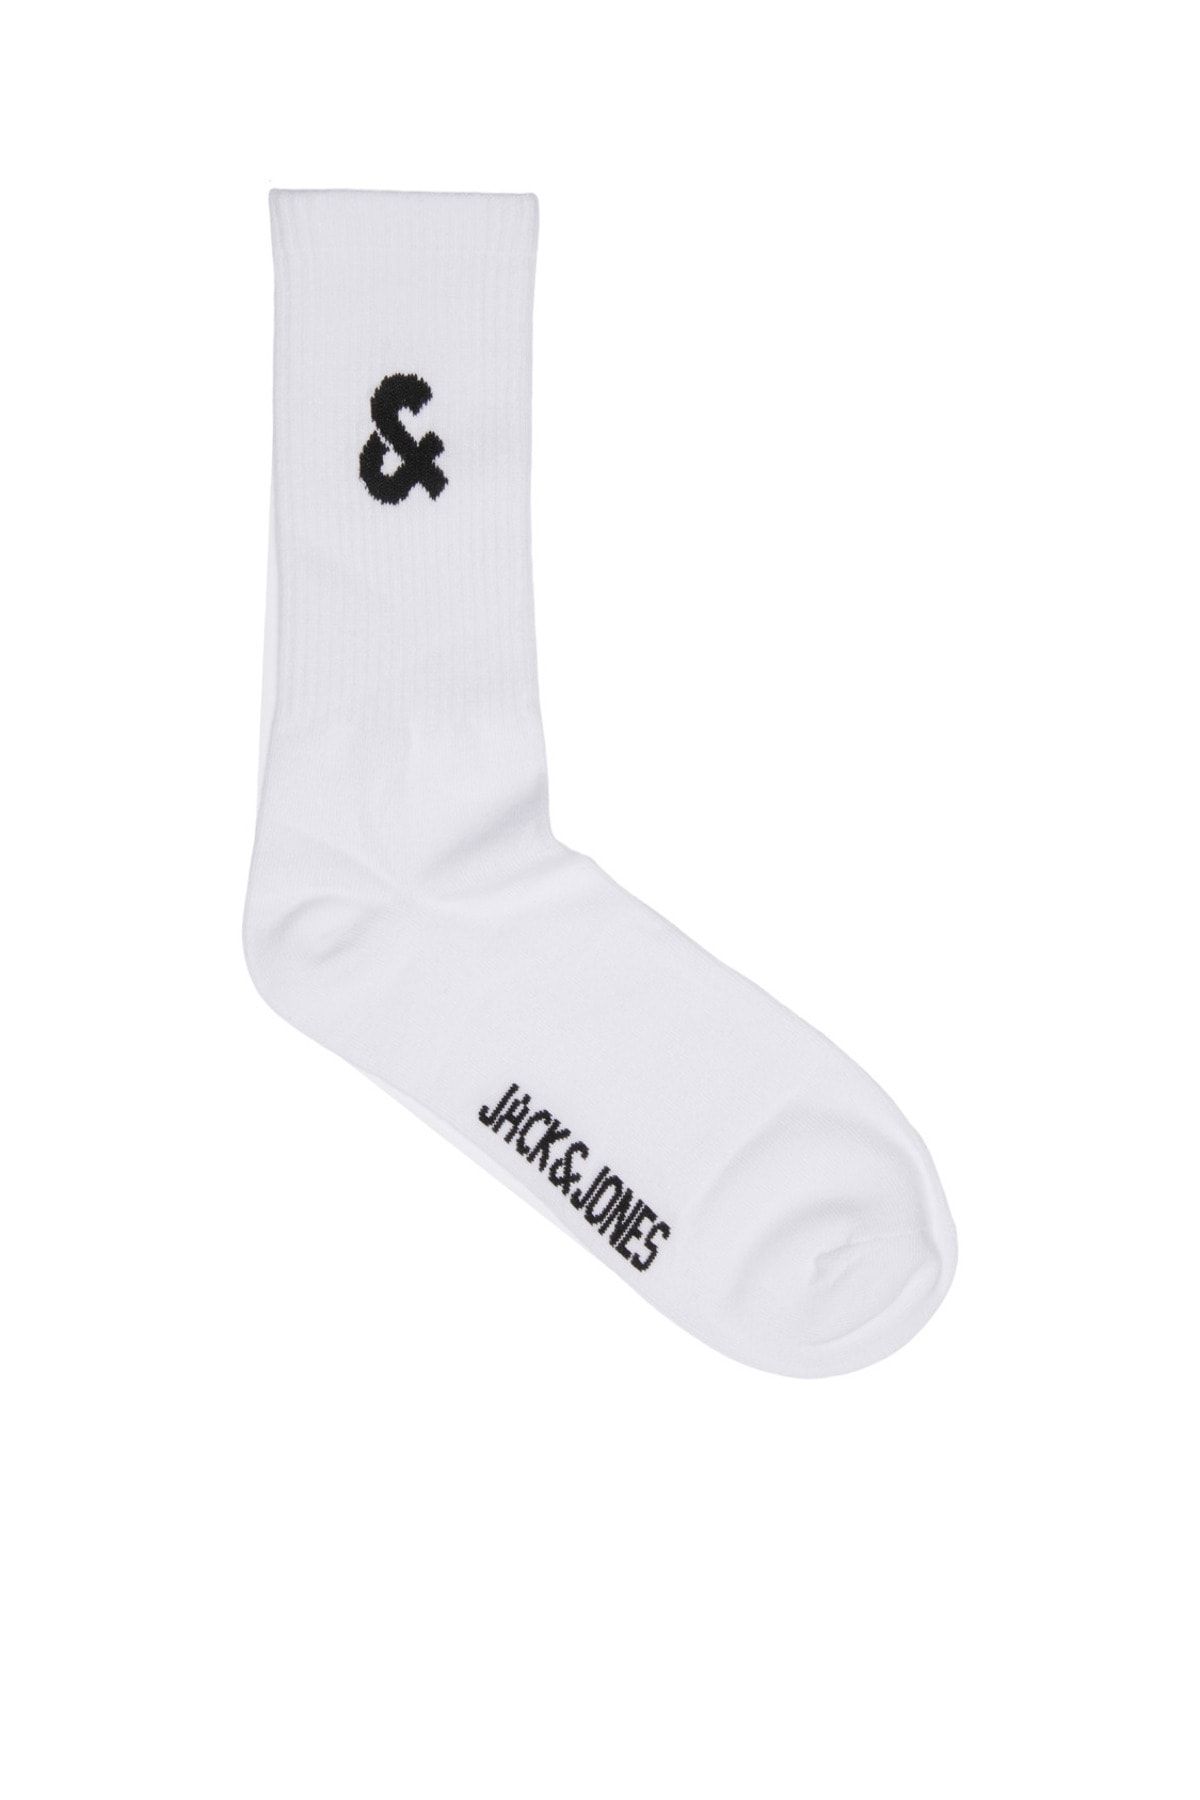 Jack & Jones Logo Nakisli Tekli Çorap - Oliver